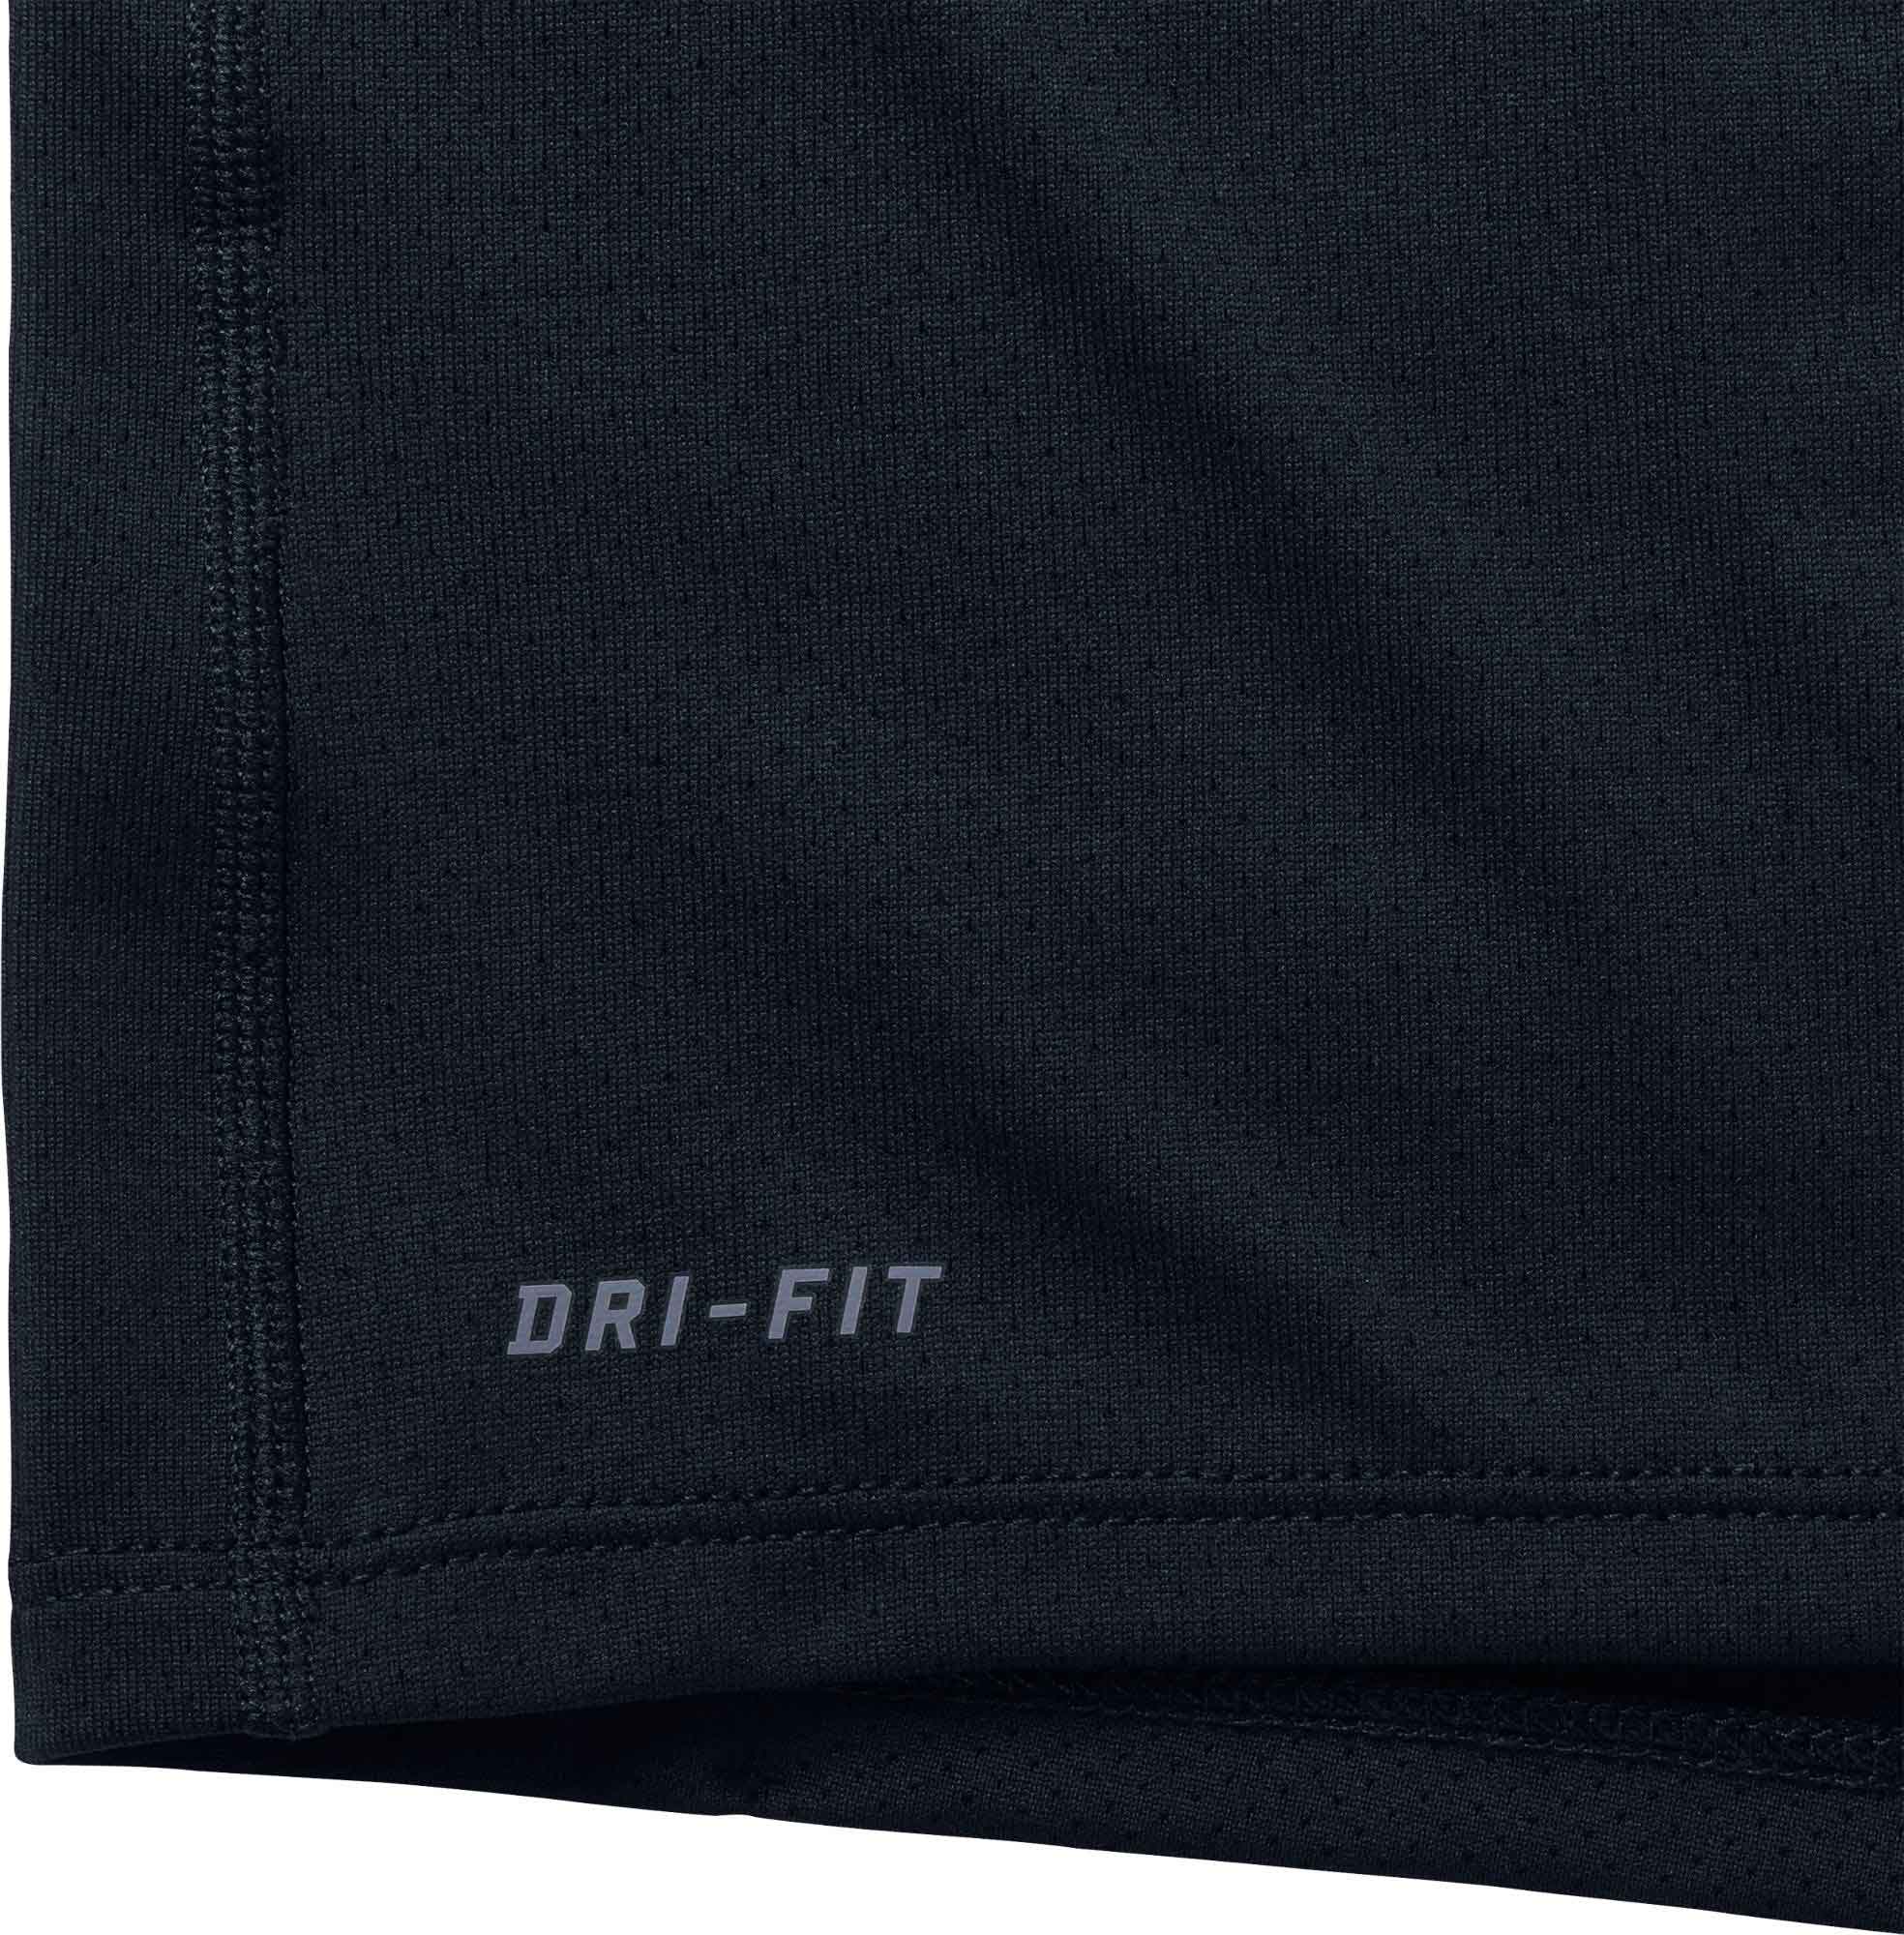 DRI-FIT CONTOUR - Men's Running Short-Sleeve Shirt